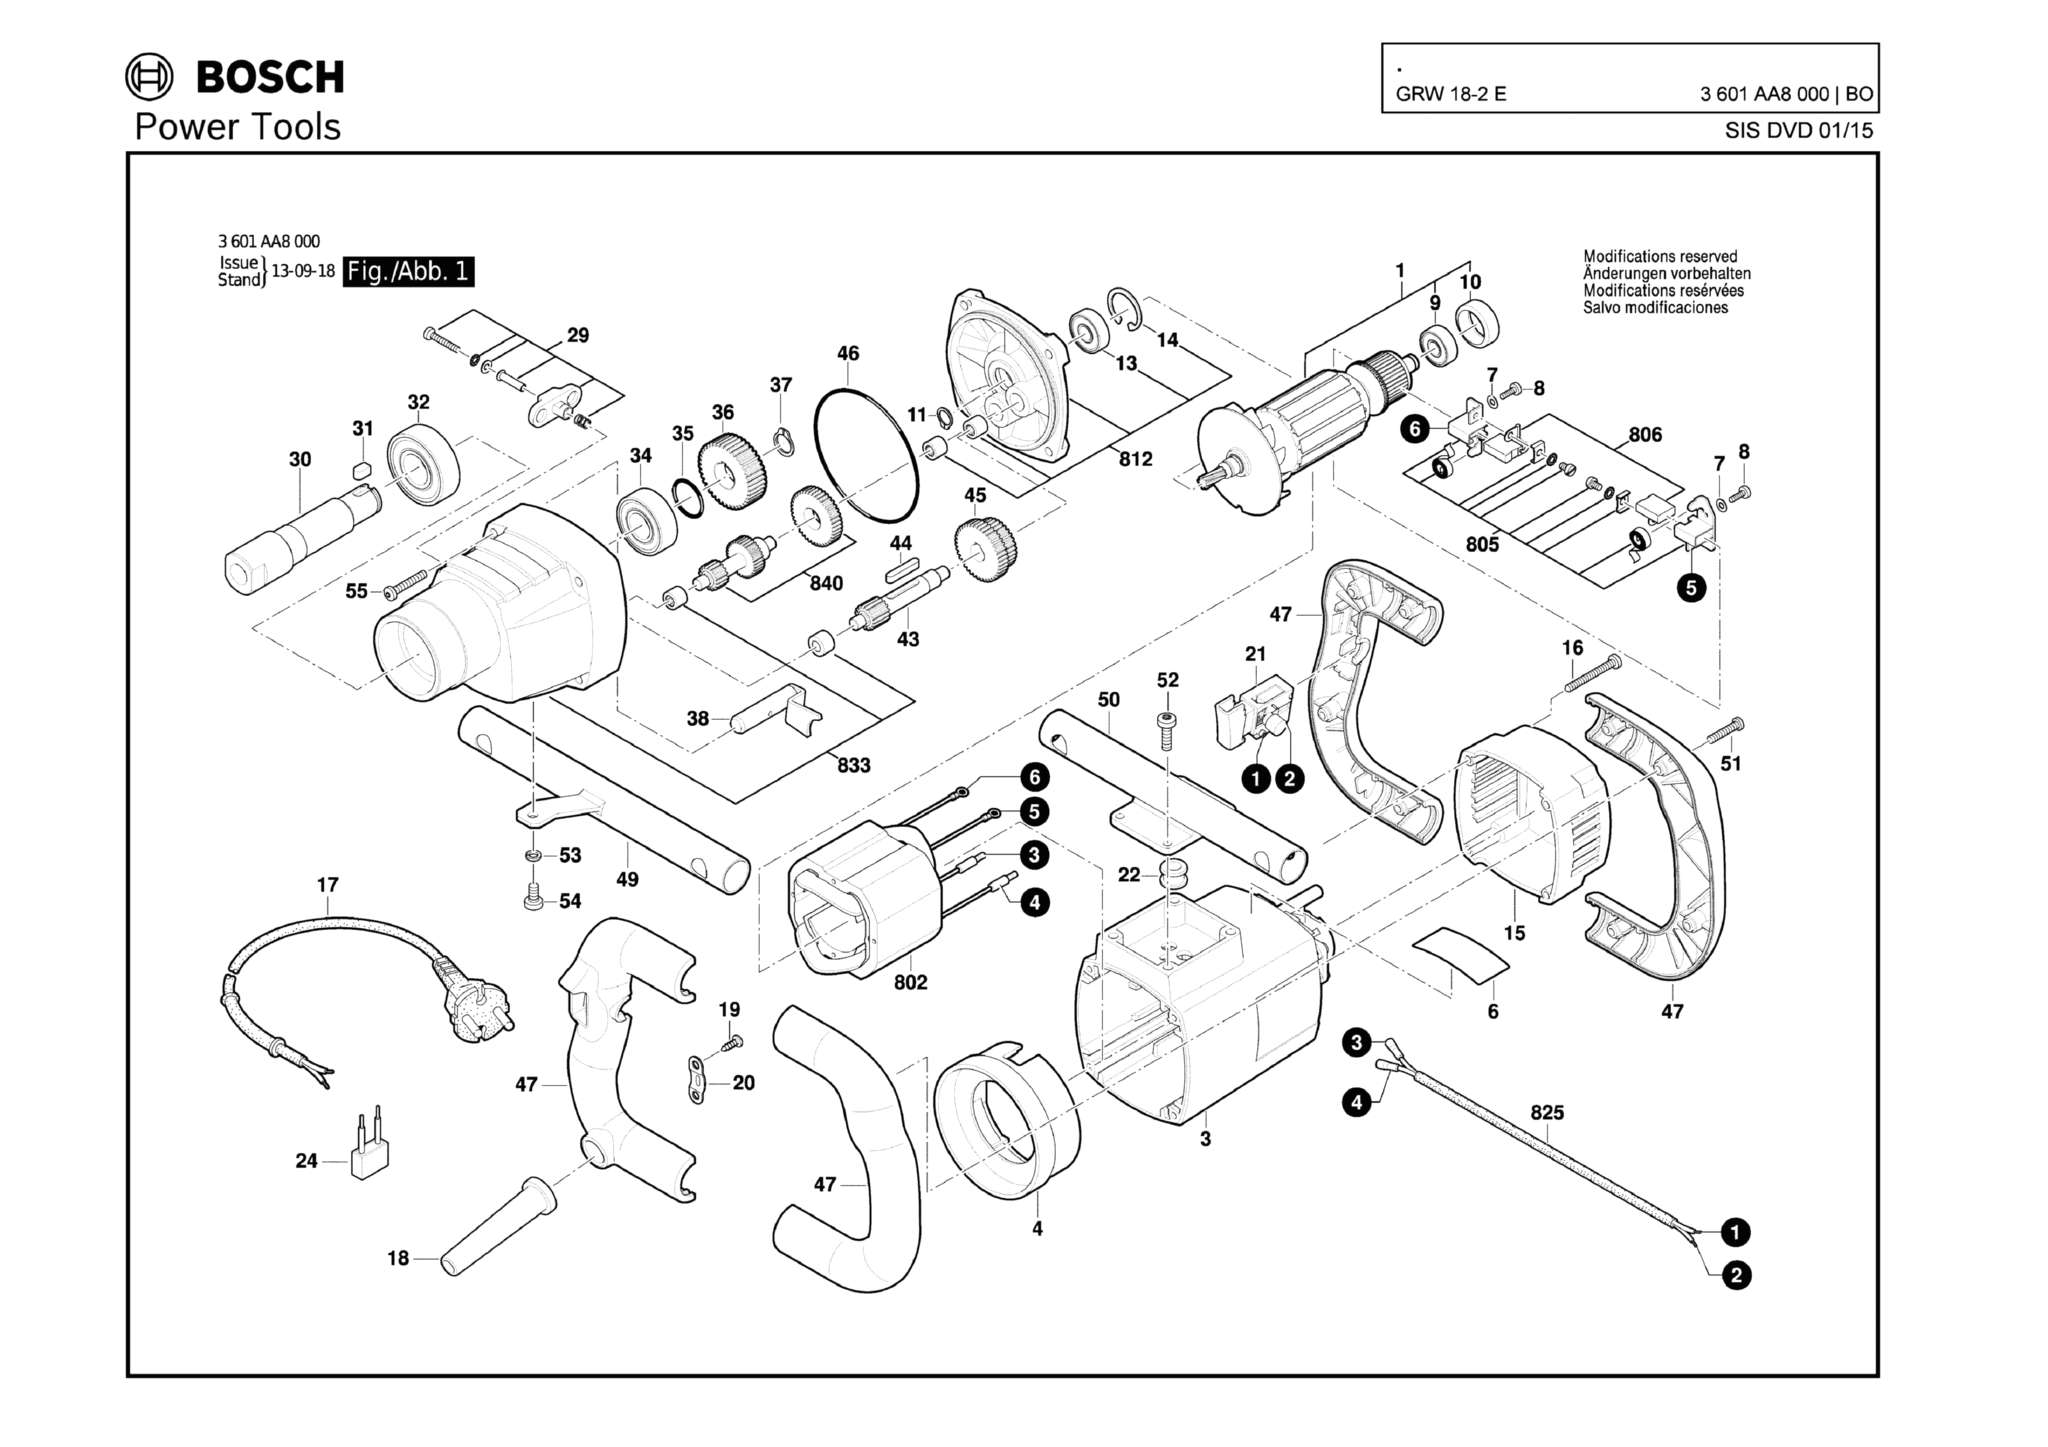 Запчасти, схема и деталировка Bosch GRW 18-2 E (ТИП 3601AA8000)